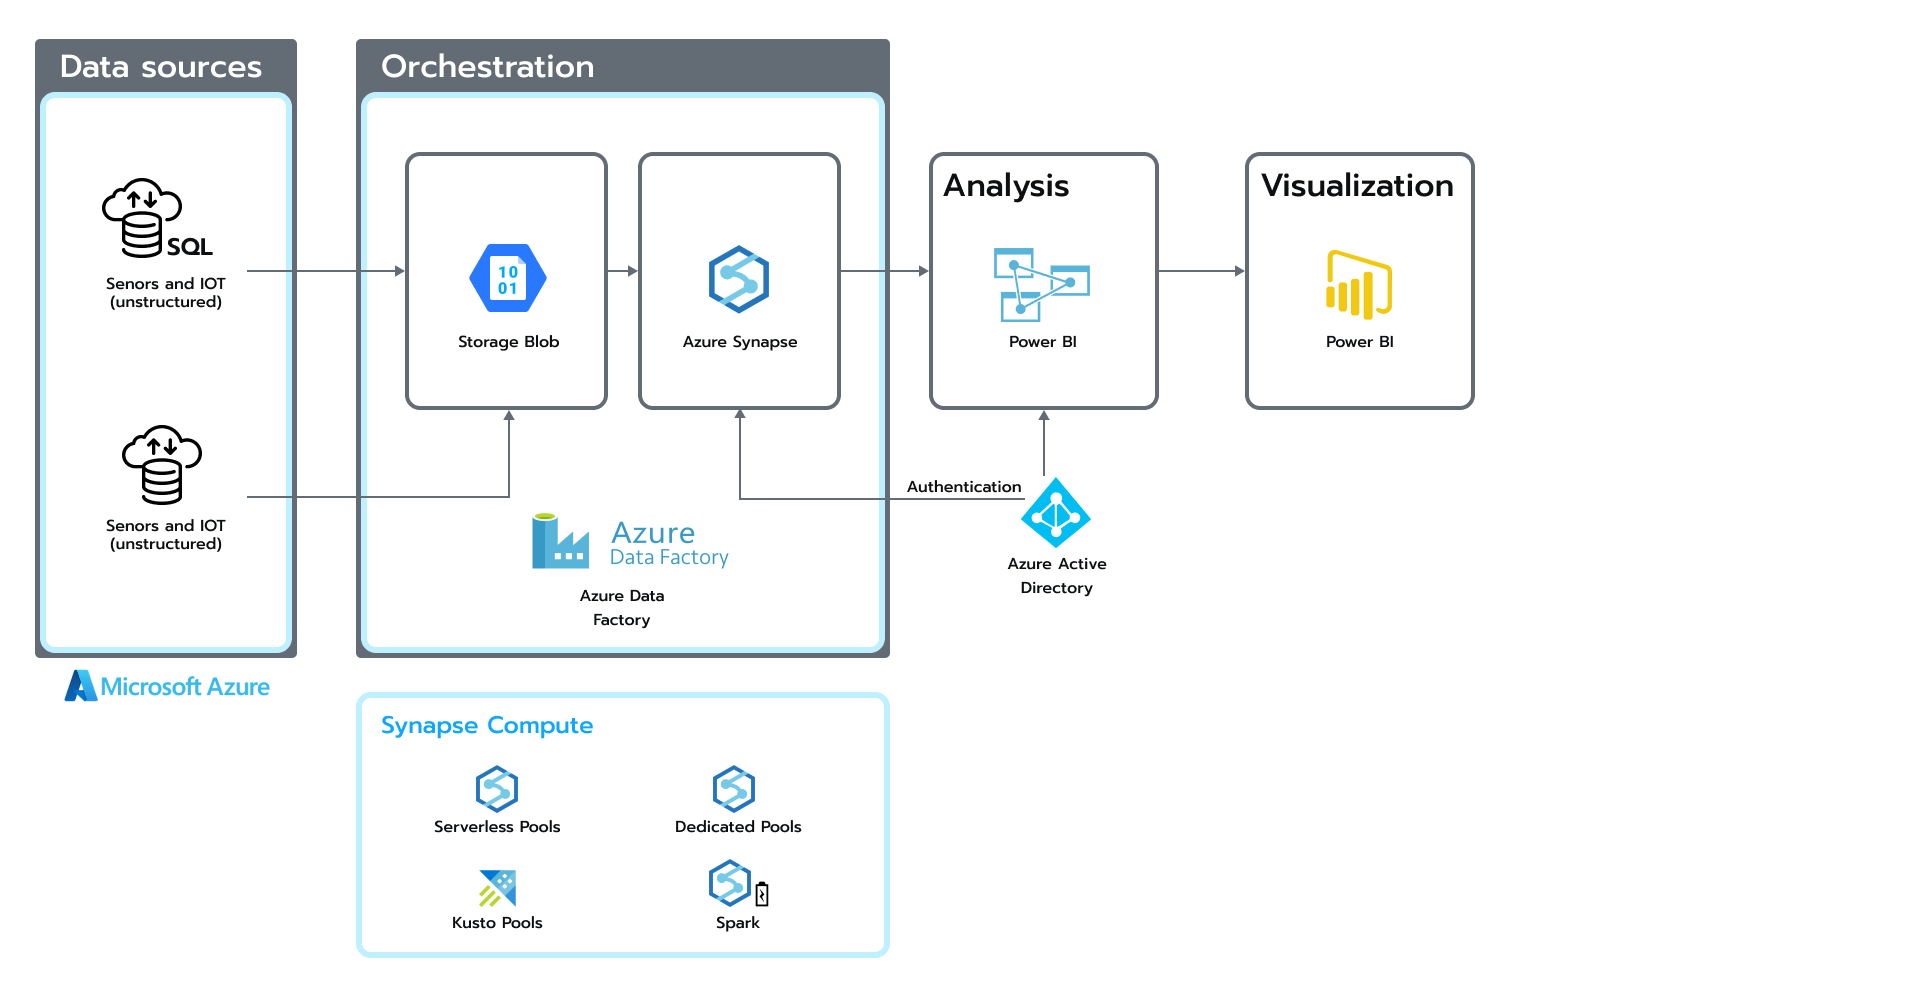 Architecture based on the Azure Data ecosystem